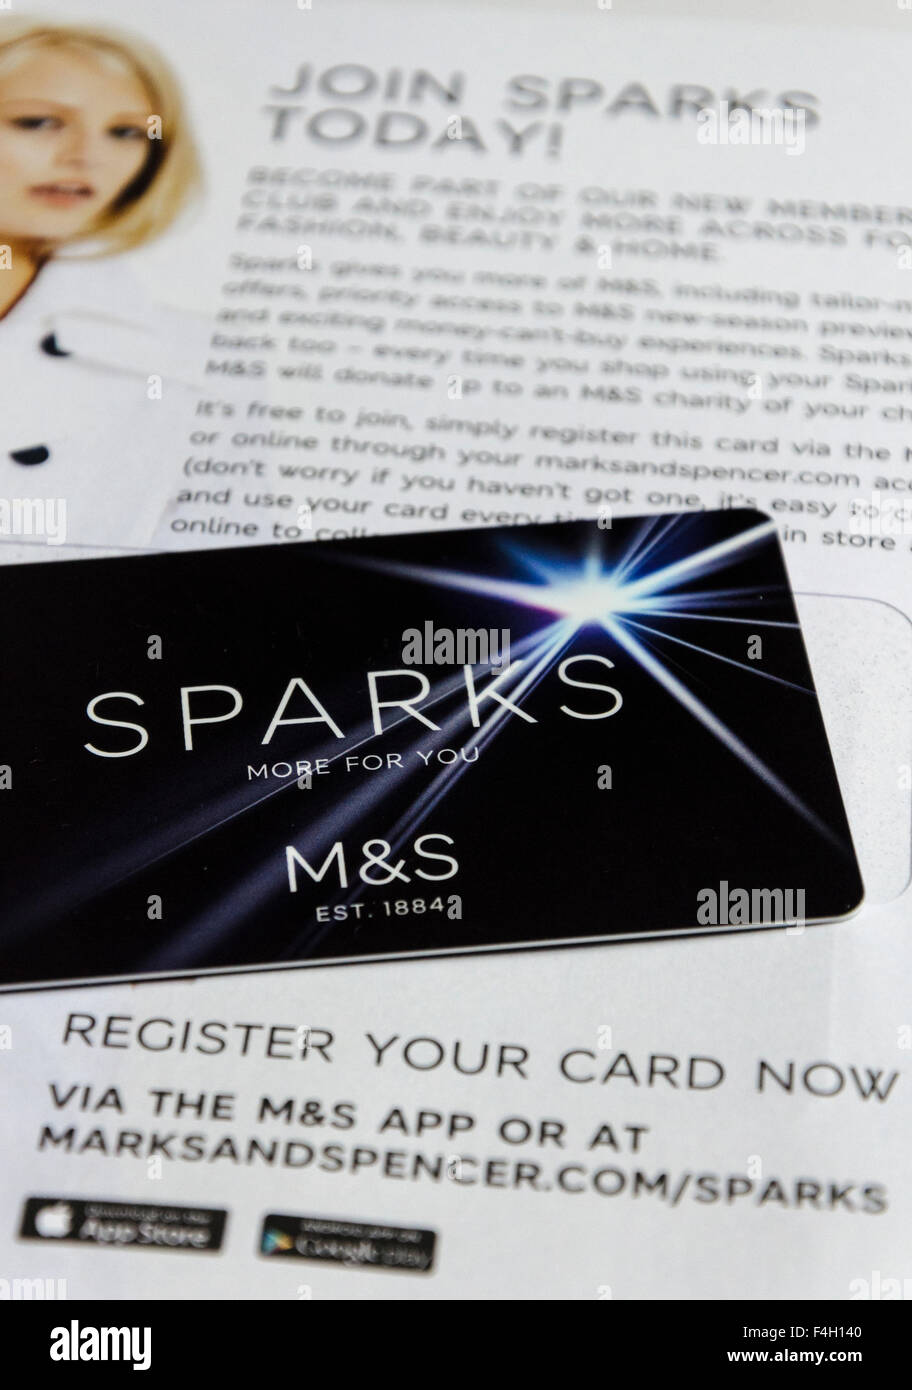 Londres, Royaume-Uni. 18 Octobre 2015 : Détaillant M&S lance 'Sparks' carte de fidélité pour les actionnaires et détenteurs de M&S, cartes de crédit et de débit avant de lancer à l'échelle nationale dans les magasins le 22 octobre. Credit : CAMimage/Alamy Live News Banque D'Images